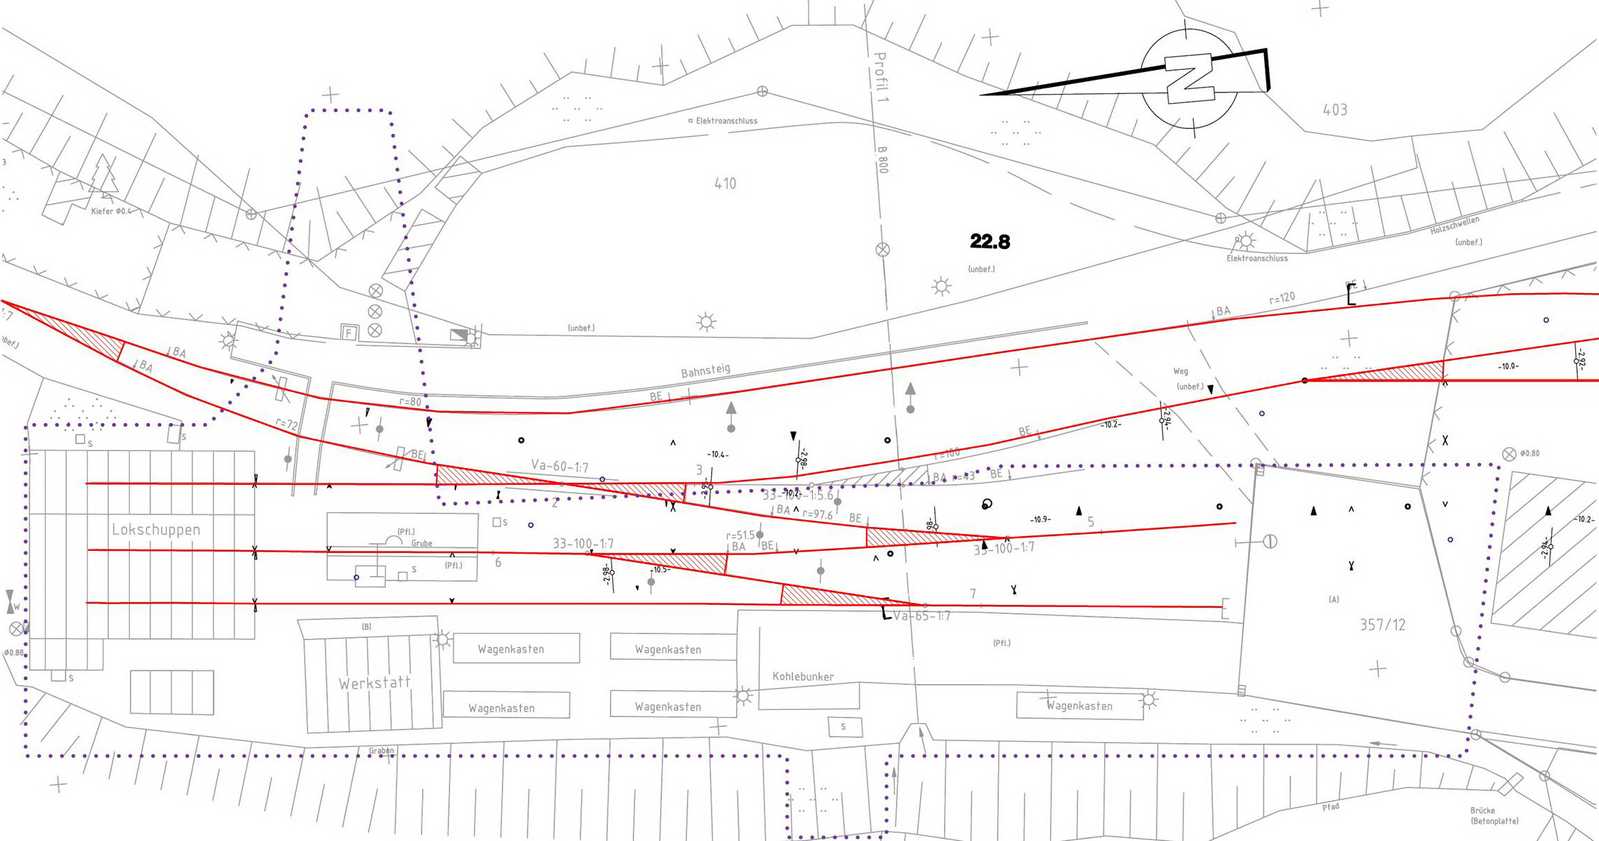 Lageplan des nördlichen Teils des Bahnhofs Jöhstadt: Bestandsplan der Gleise vor dem Lokschuppen mit Kennzeichnung des Betrachtungsumfanges für diesen Bauabschnitt.